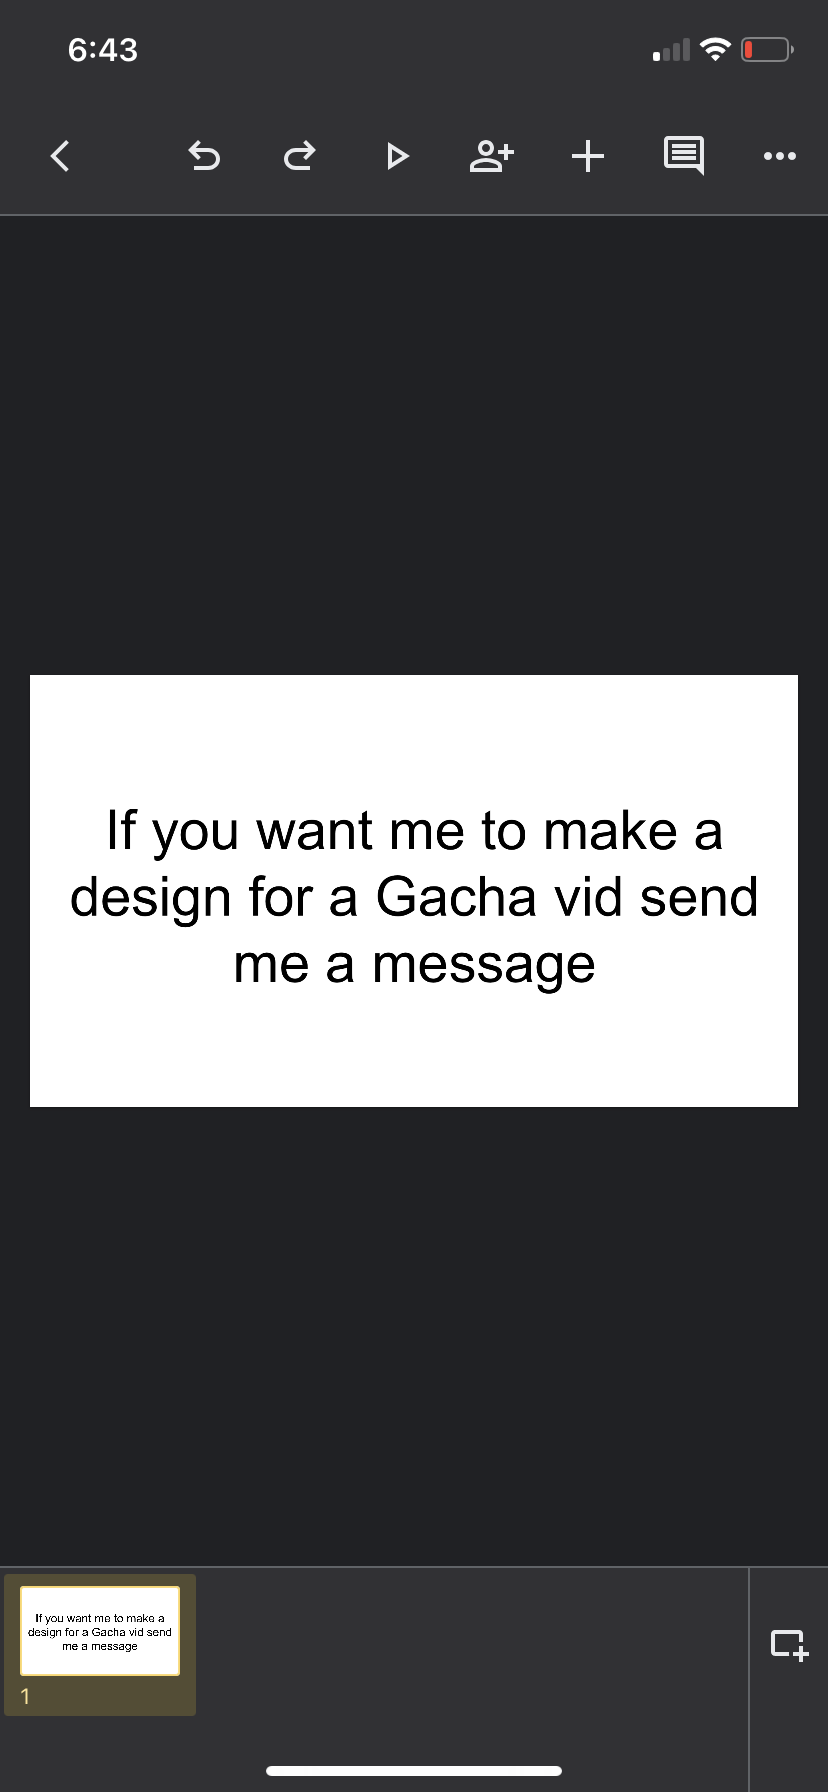 Send me a Gacha character and I’ll make you one